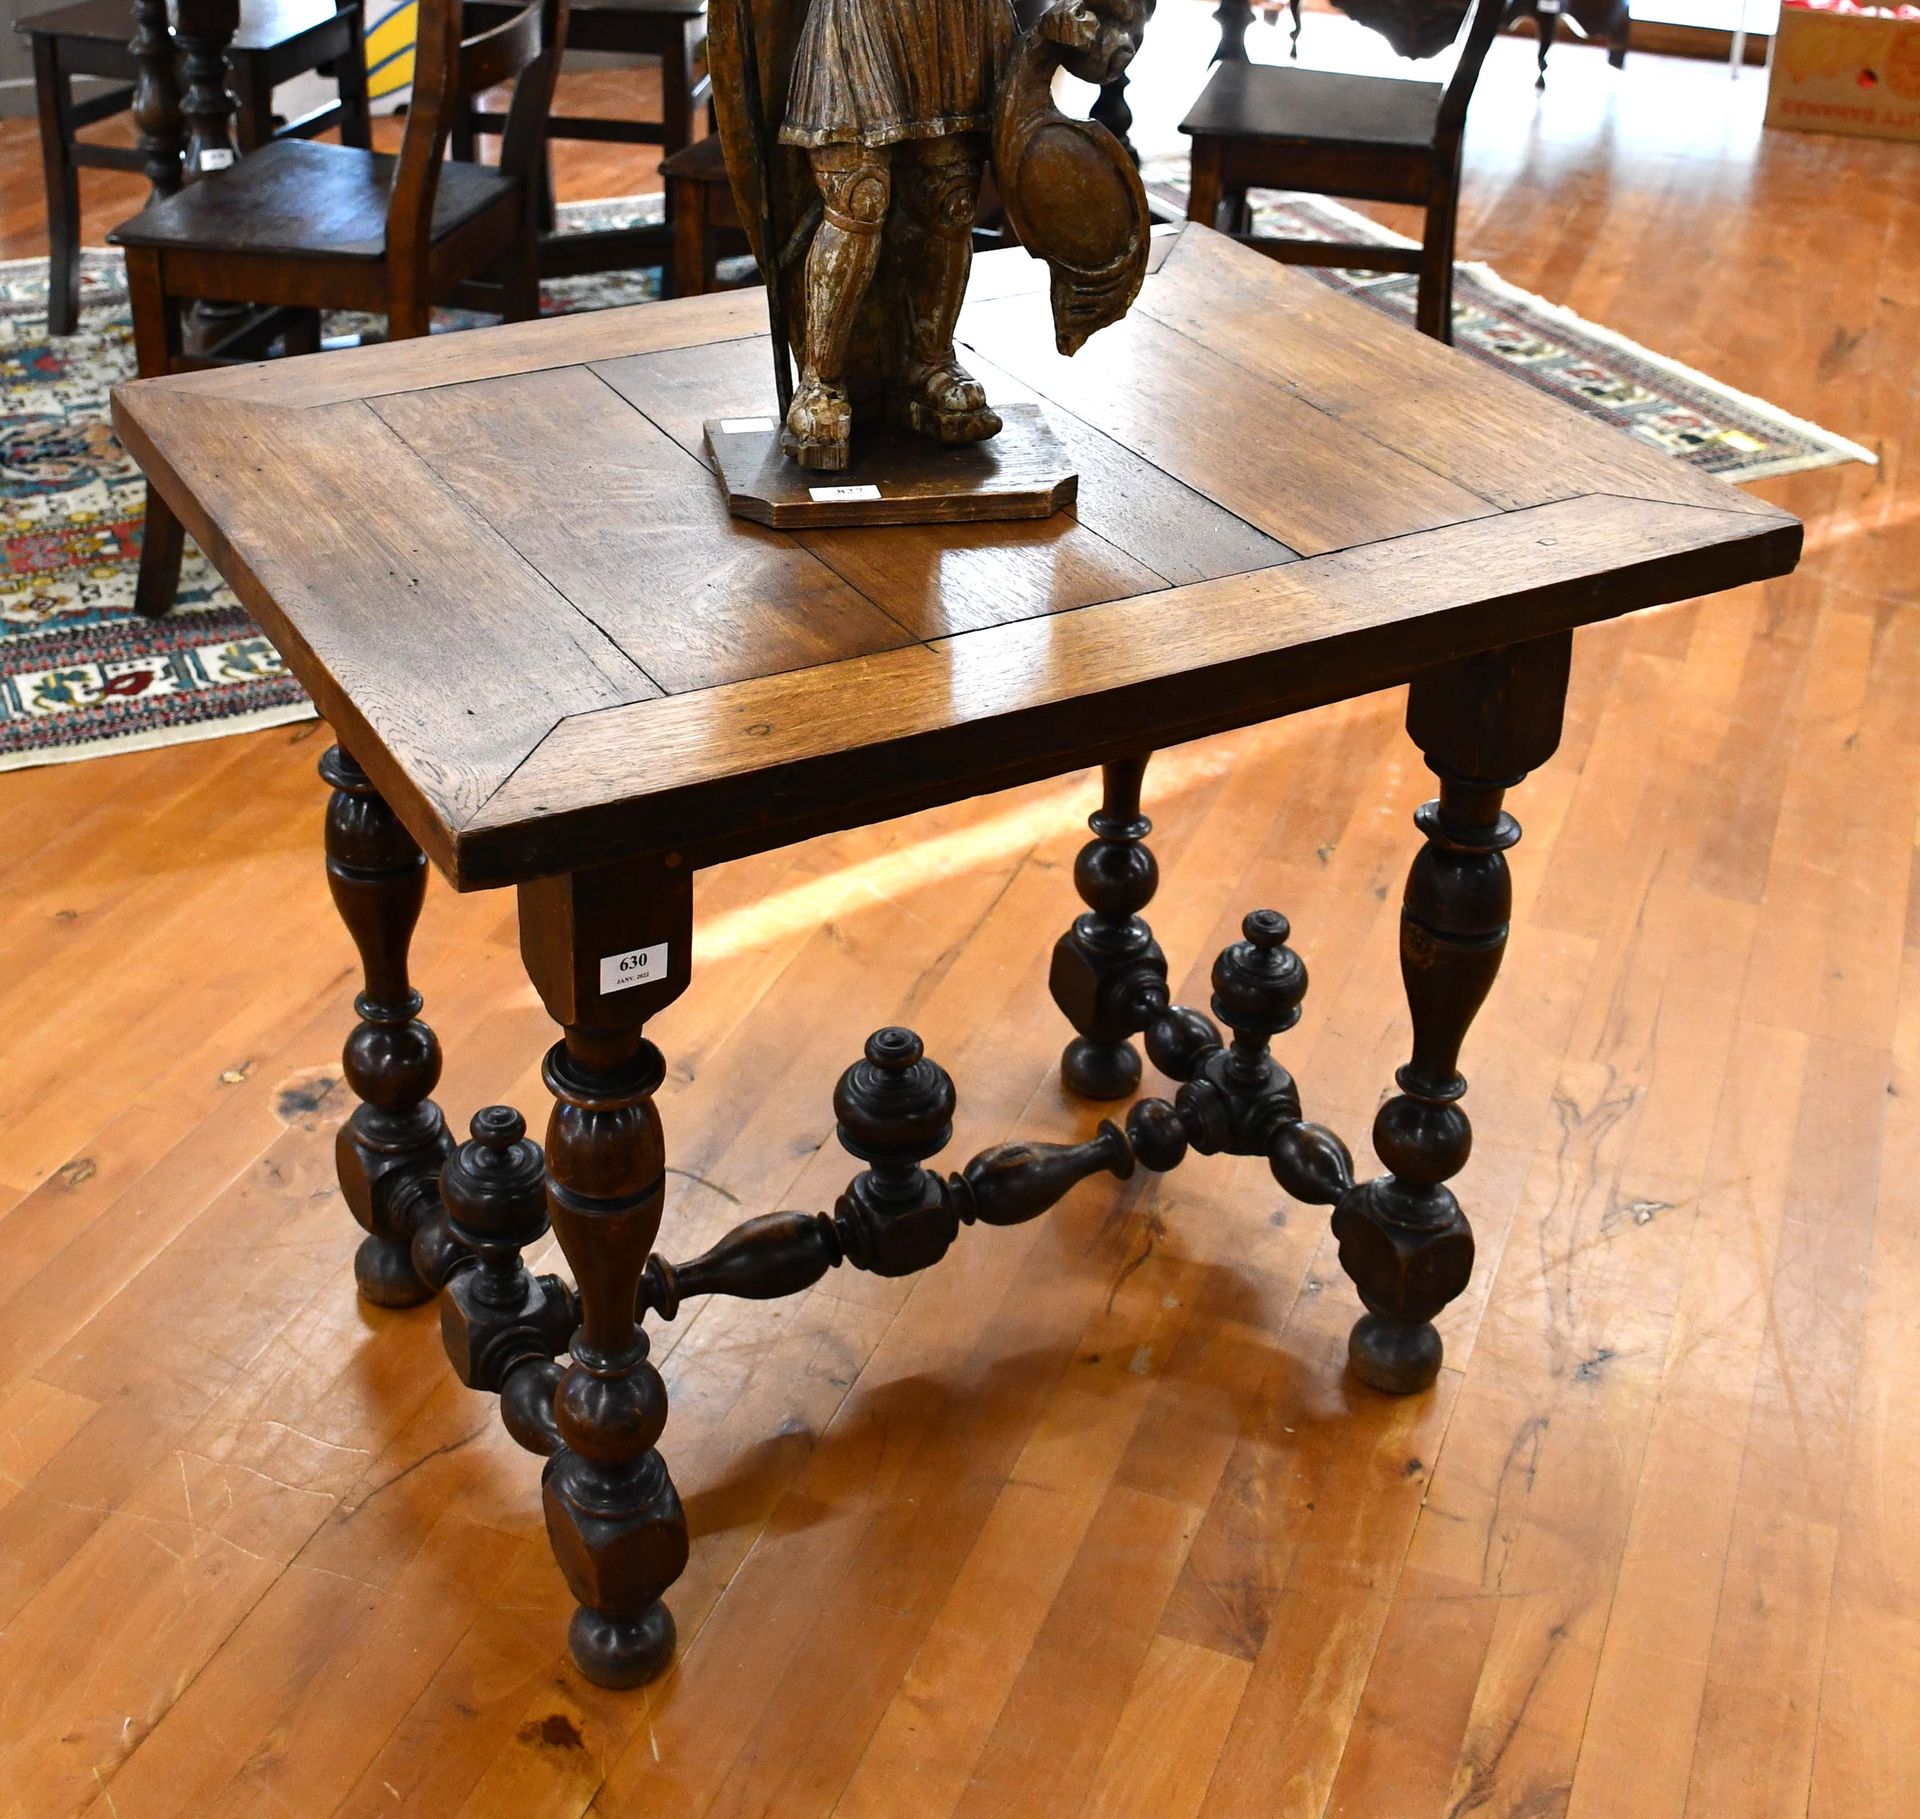 Null Tavolino Luigi XIII con gambe in noce tornite

Dimensioni: 83 cm x 64 cm.